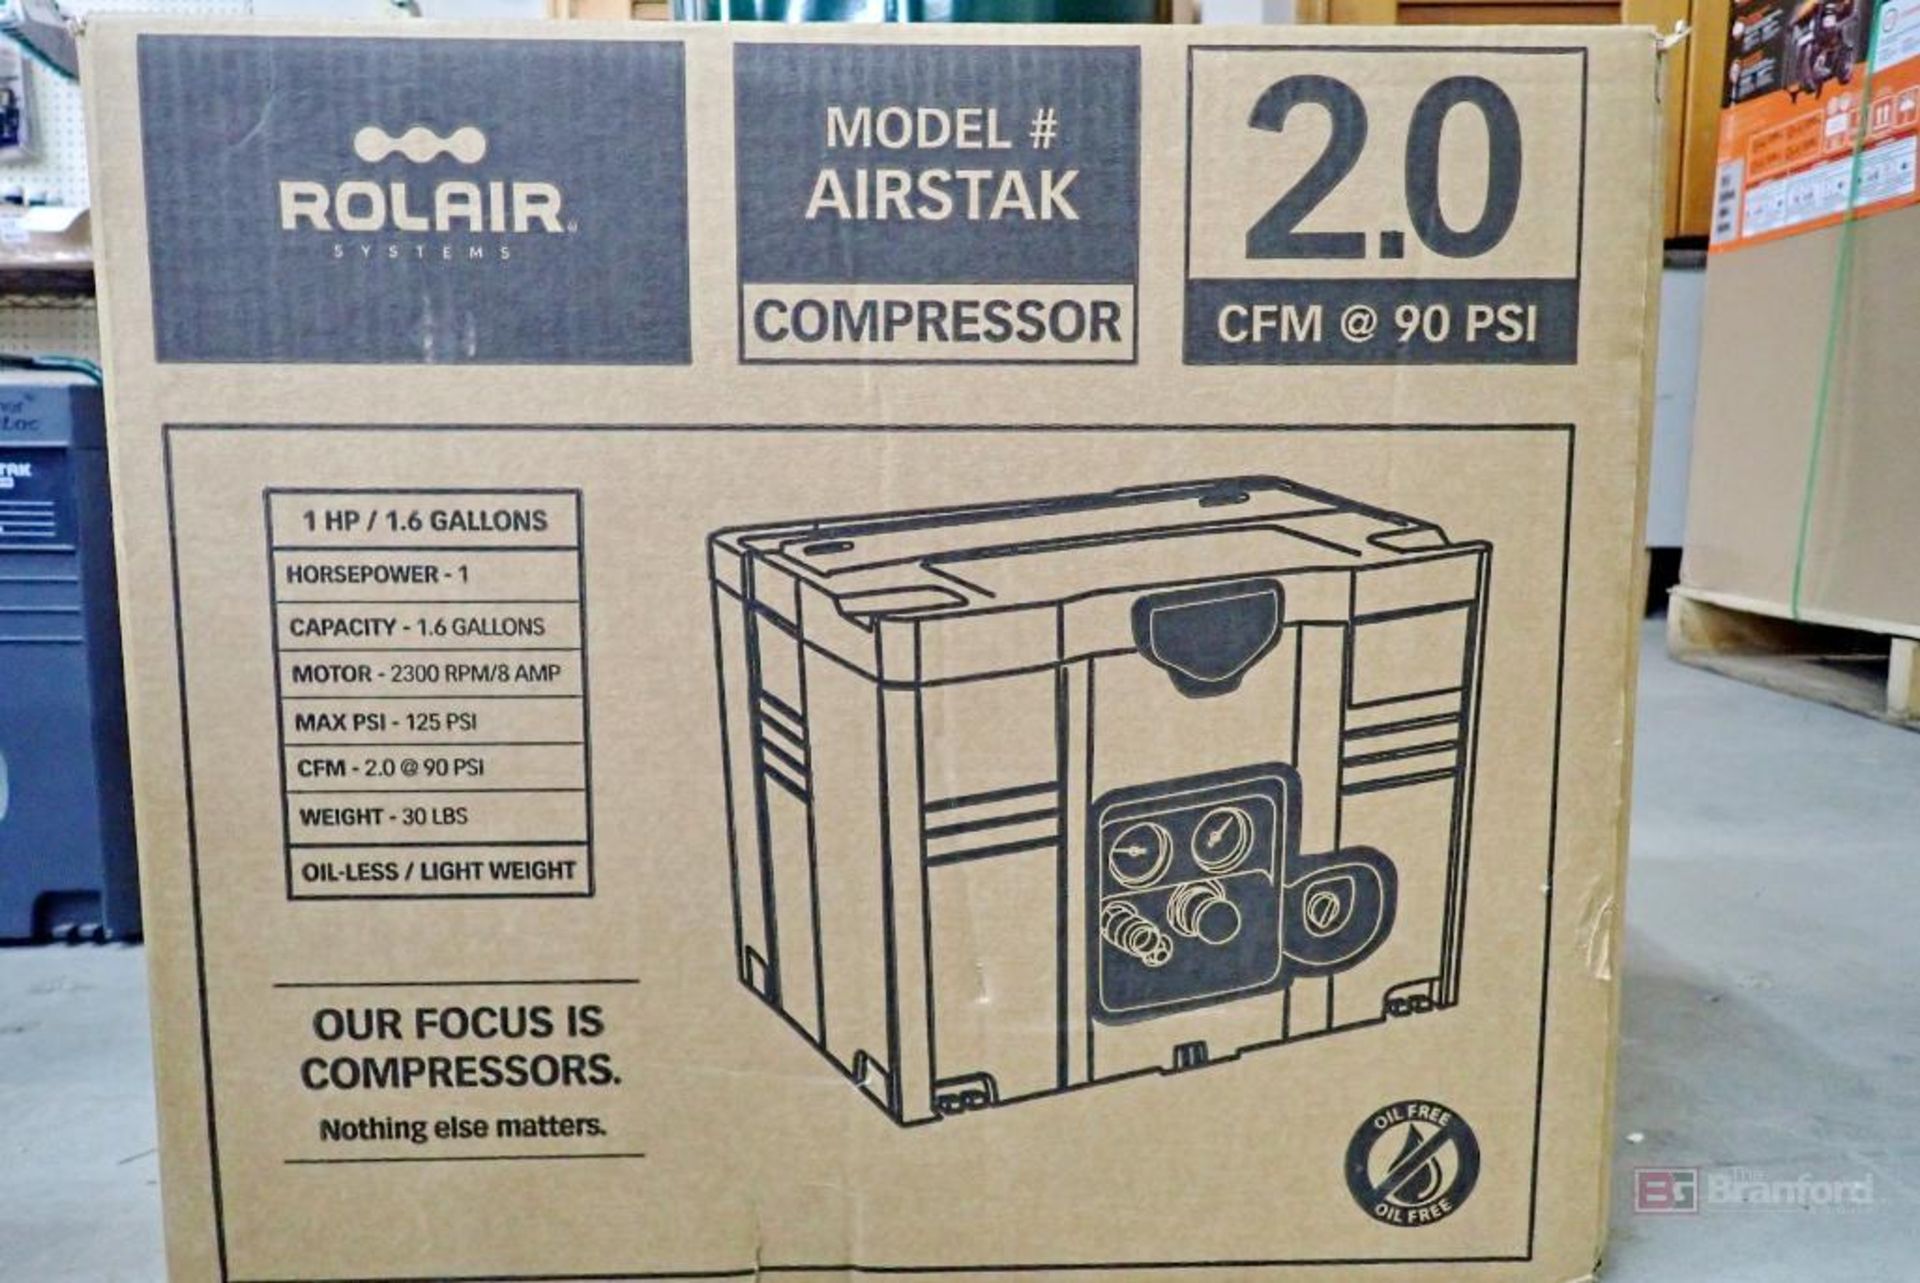 Rolair Airstak Compressor - Image 2 of 4